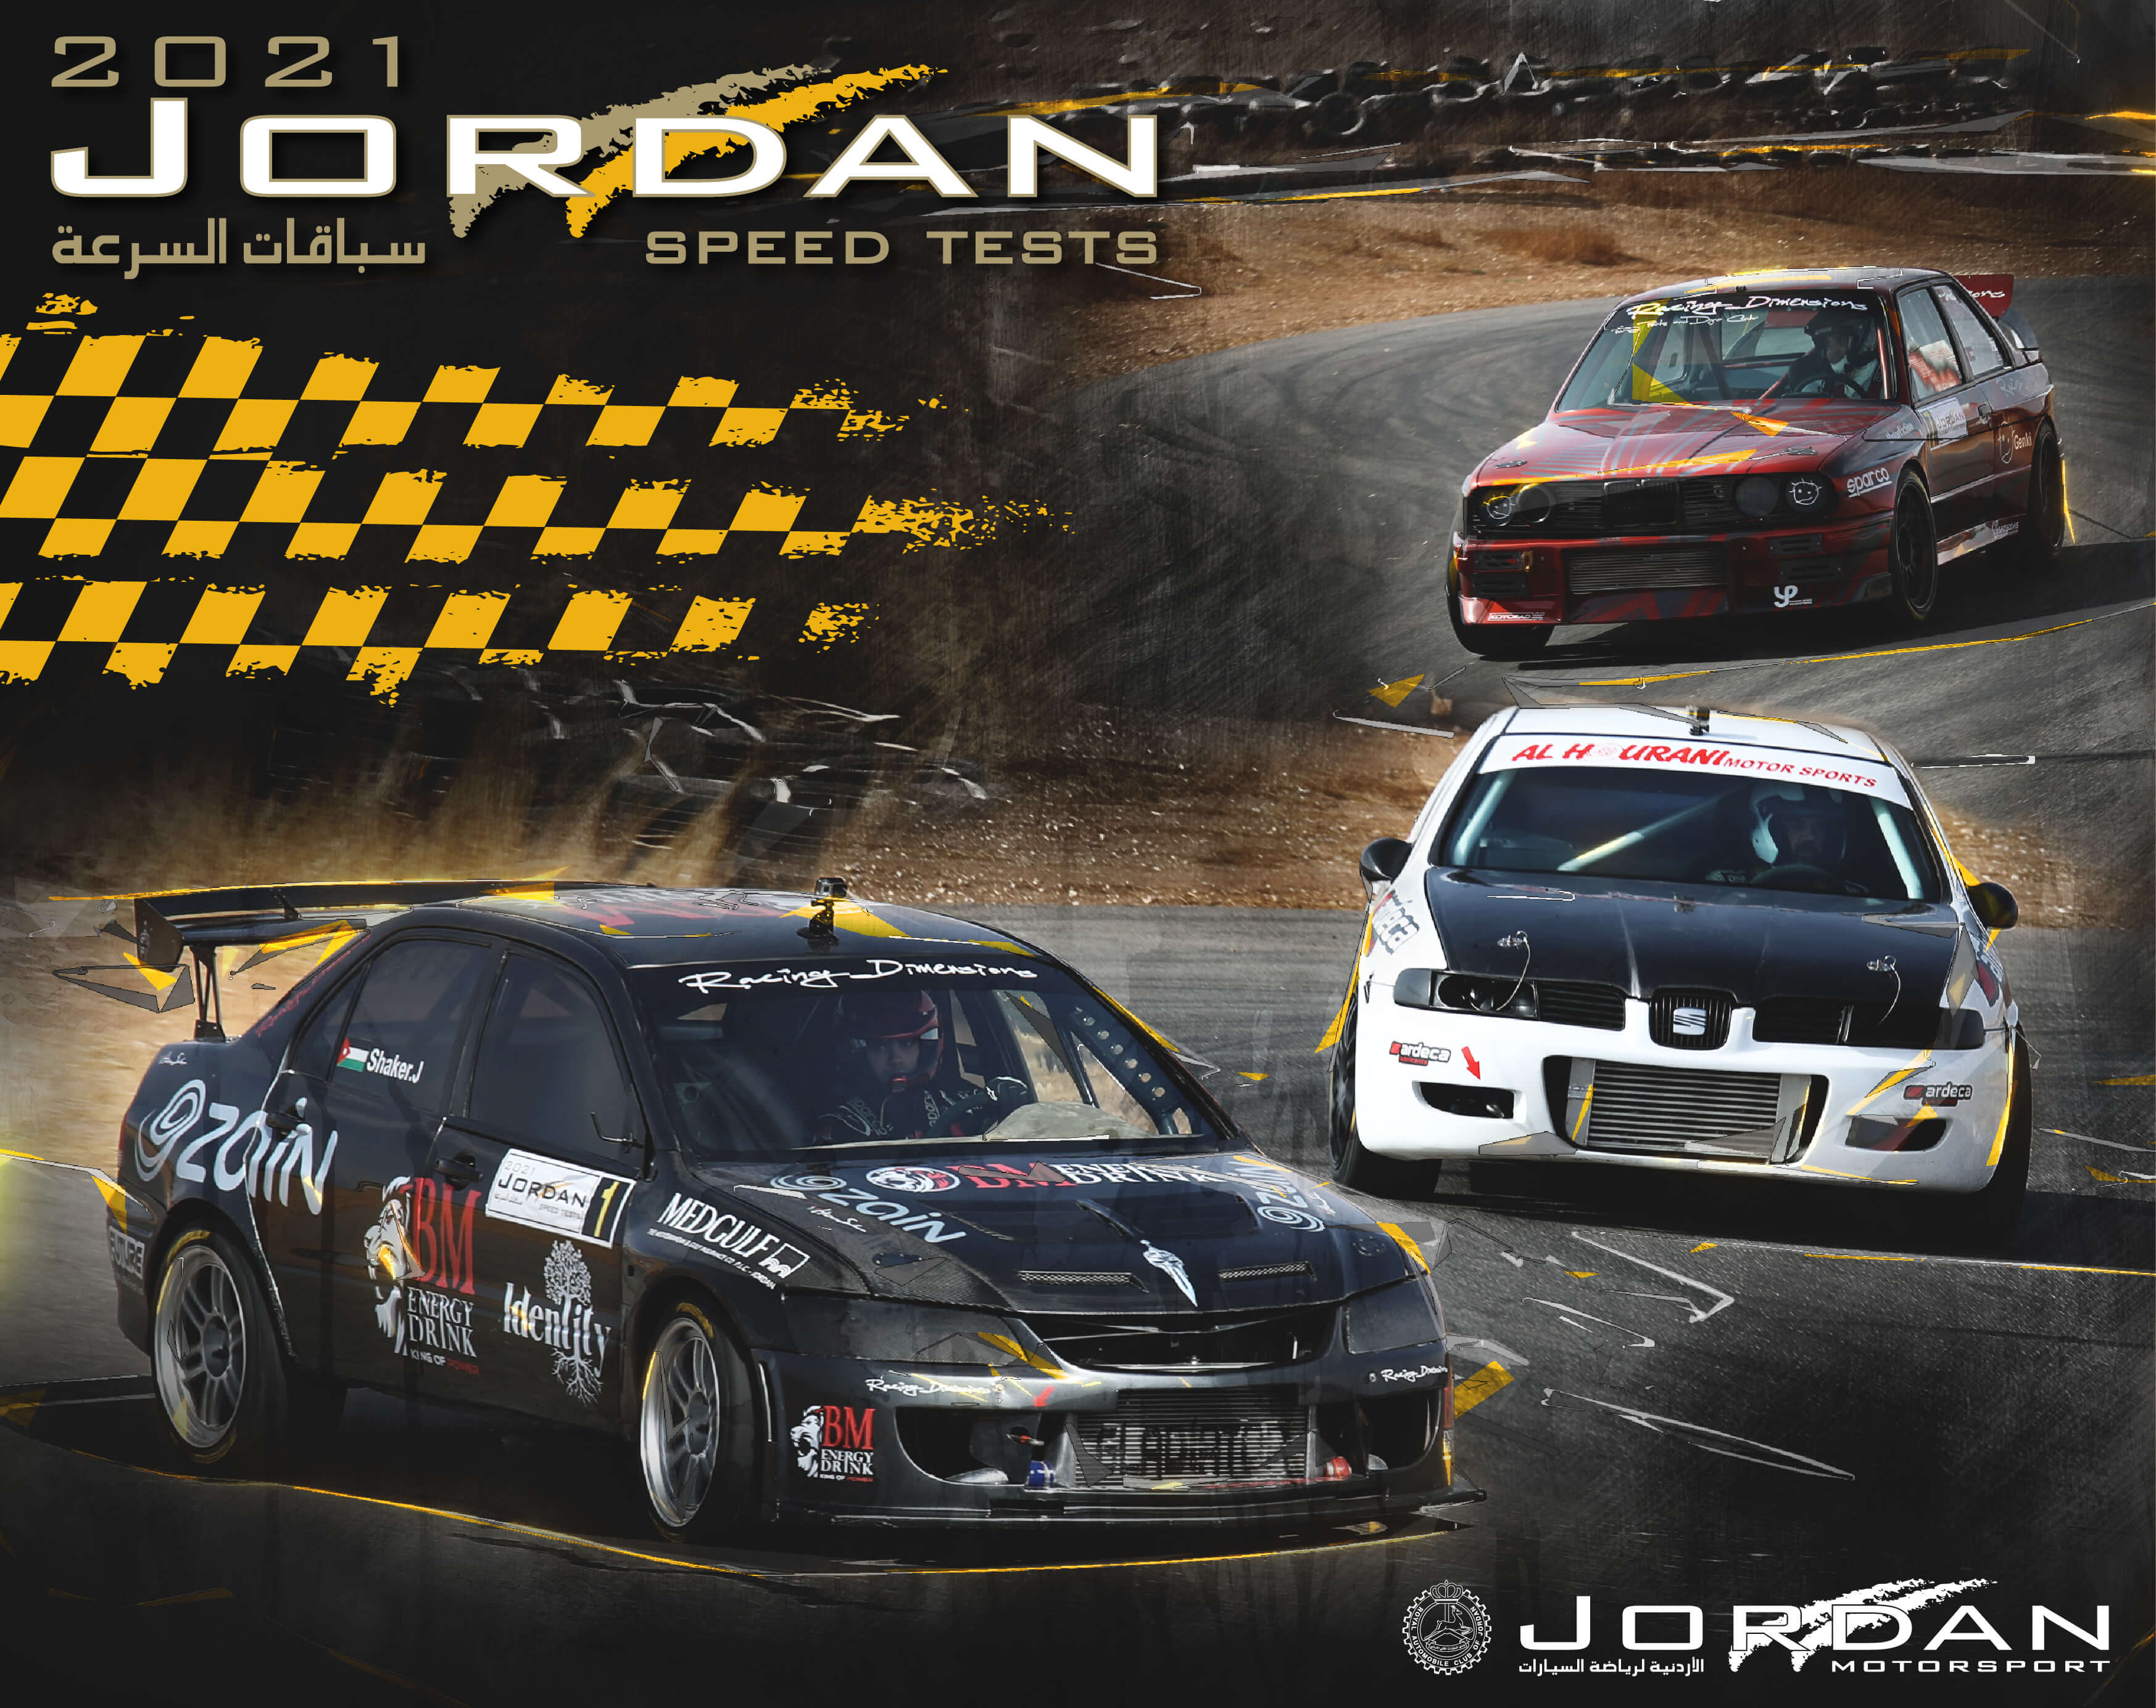 الأردنية لرياضة السيارات تعلن مشاركة 35 سائقا من الأردن وفلسطين في الجولة الختامية من بطولة الأردن لسباقات السرعة 